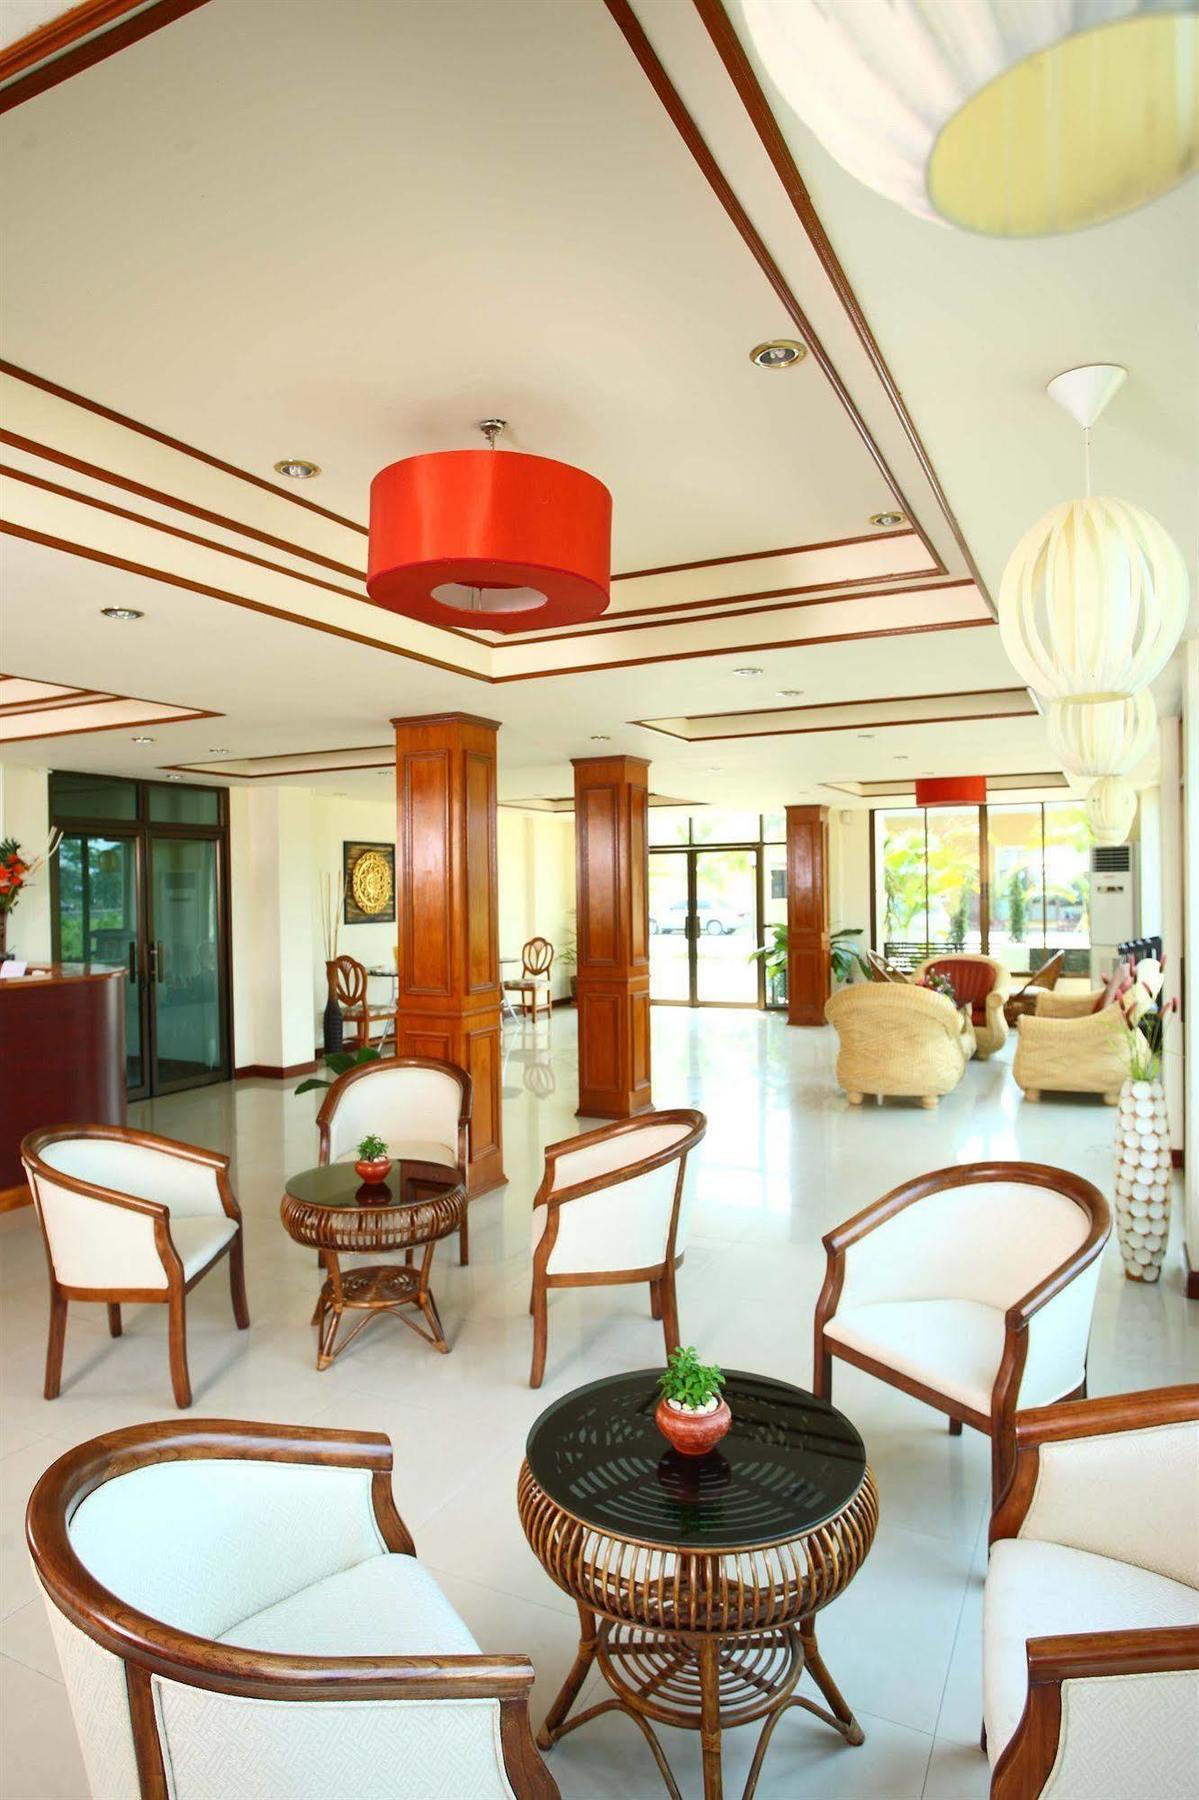 The Palm Garden Hotel Chiang Rai Exterior photo